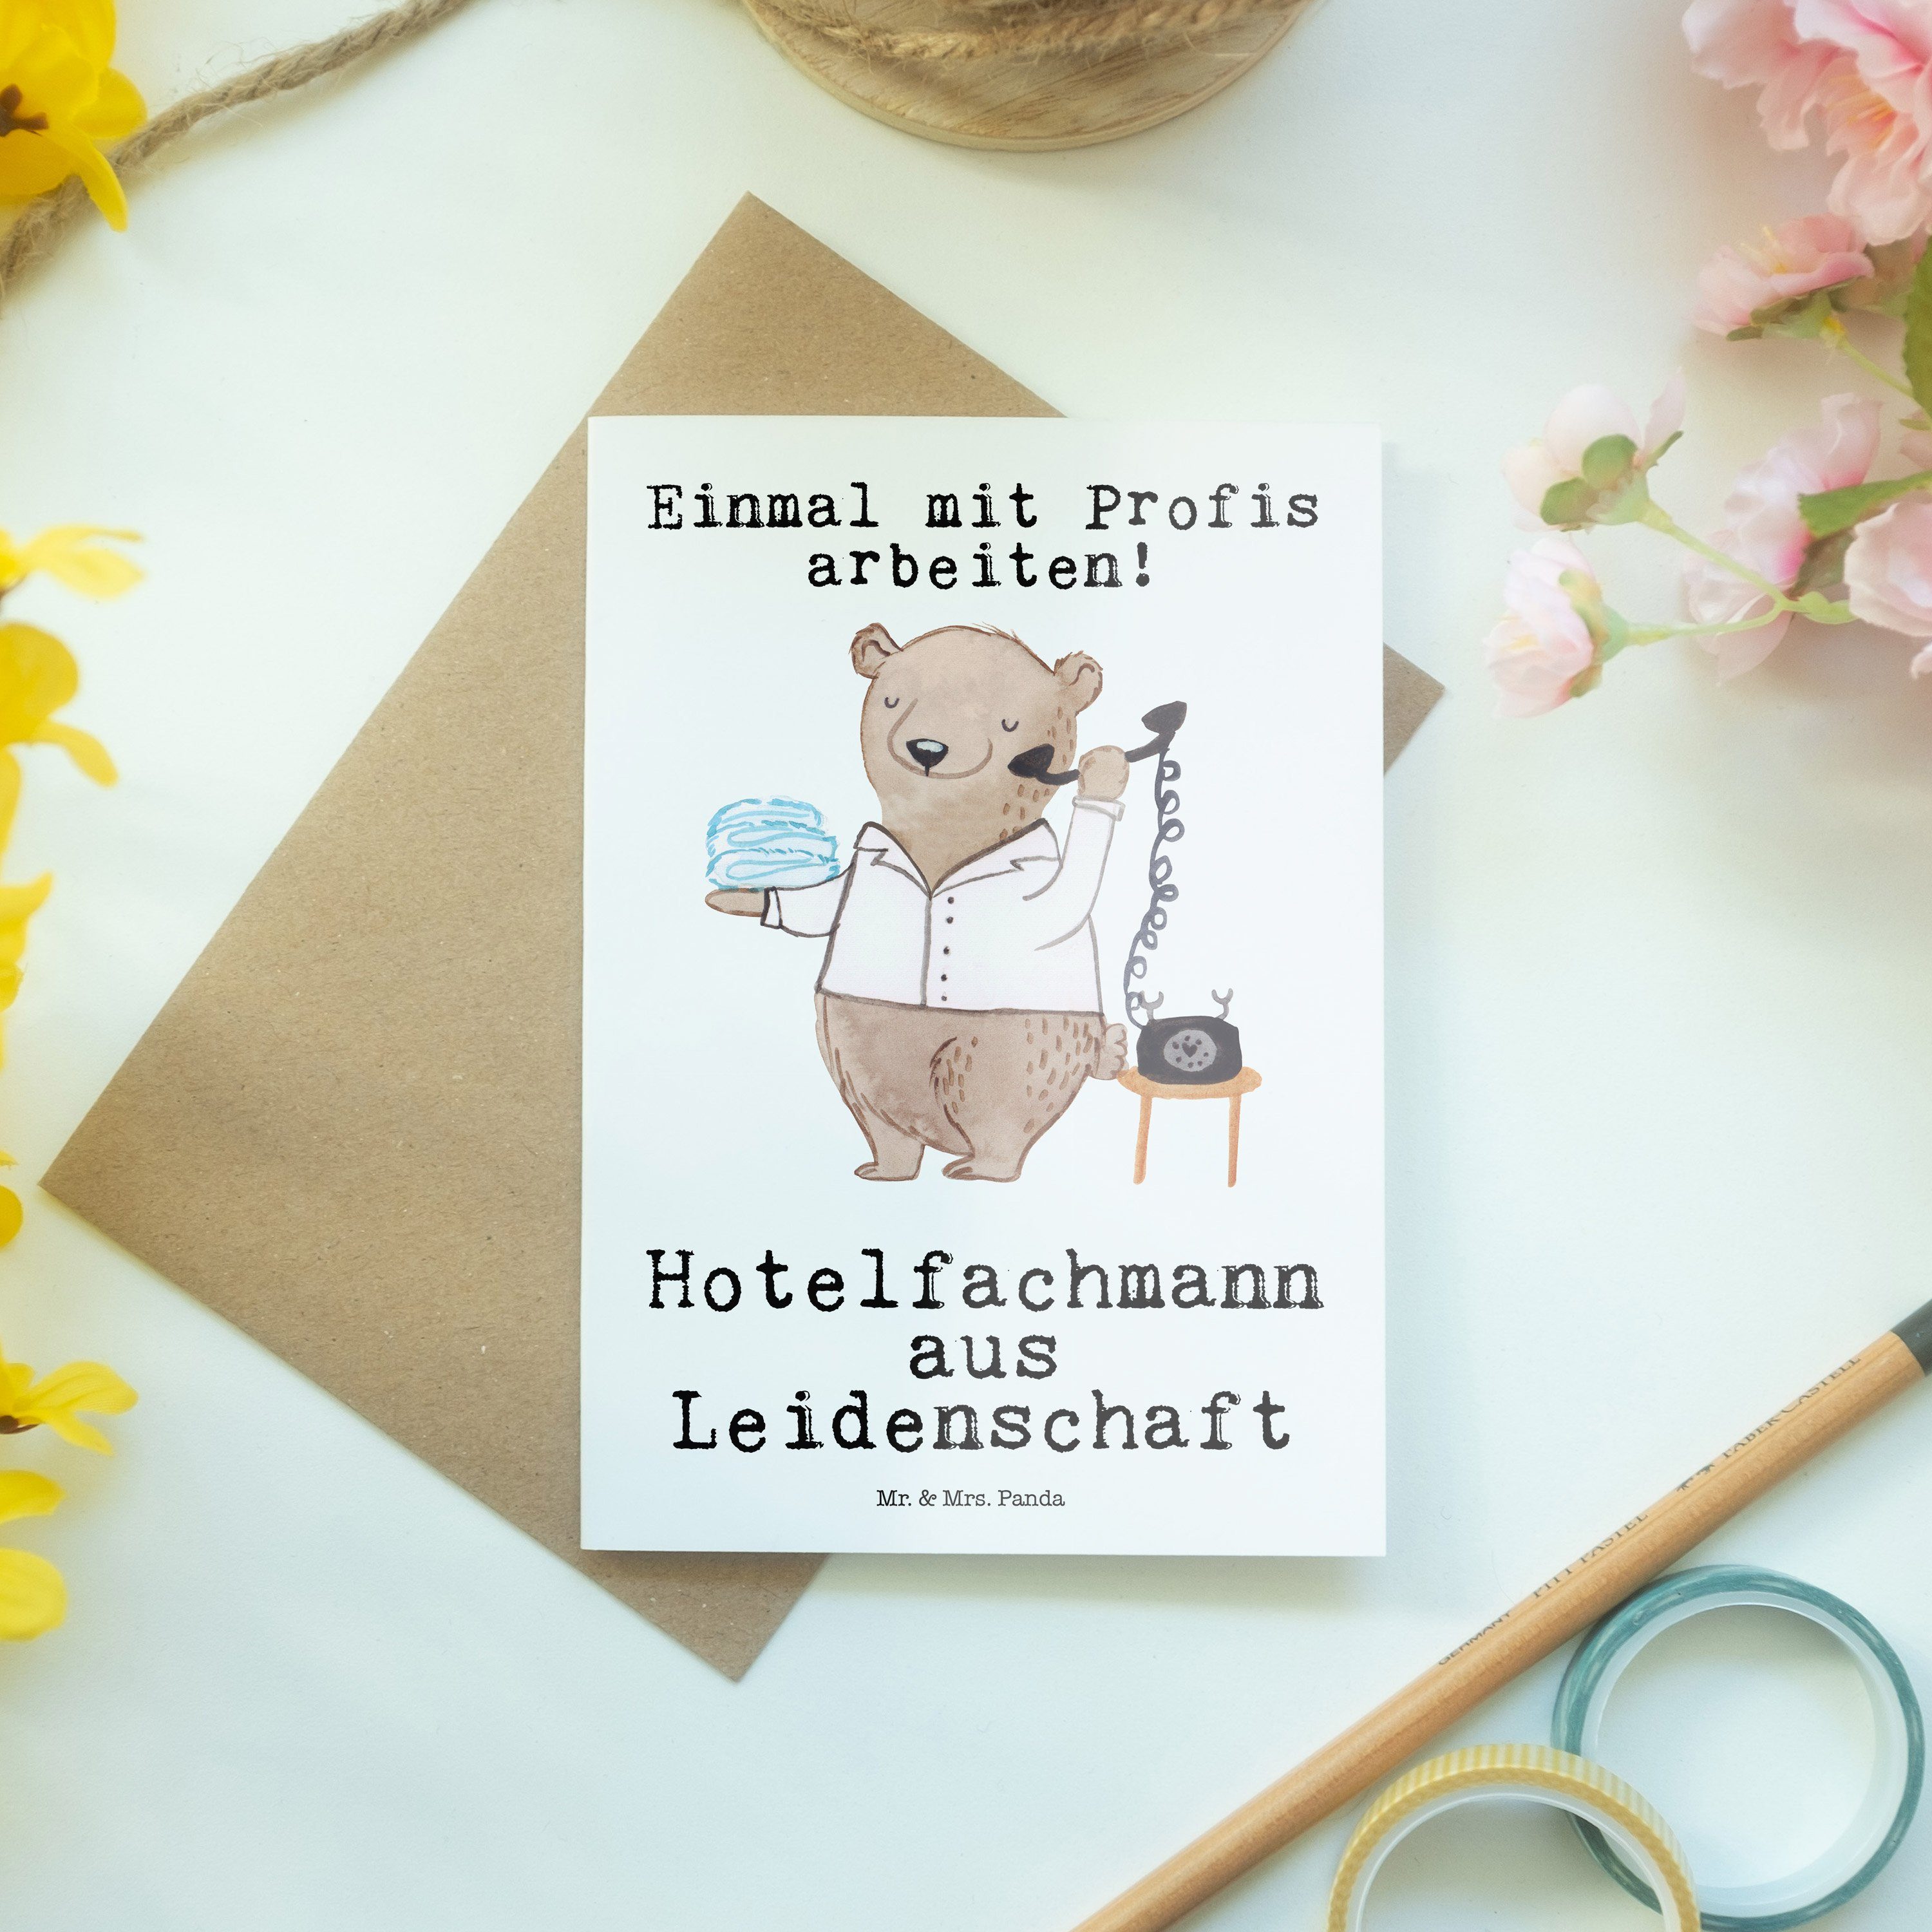 Mr. & Mrs. Weiß - Hochzeitskarte, Geschenk, Hotelfachmann Panda Kol Leidenschaft - aus Grußkarte